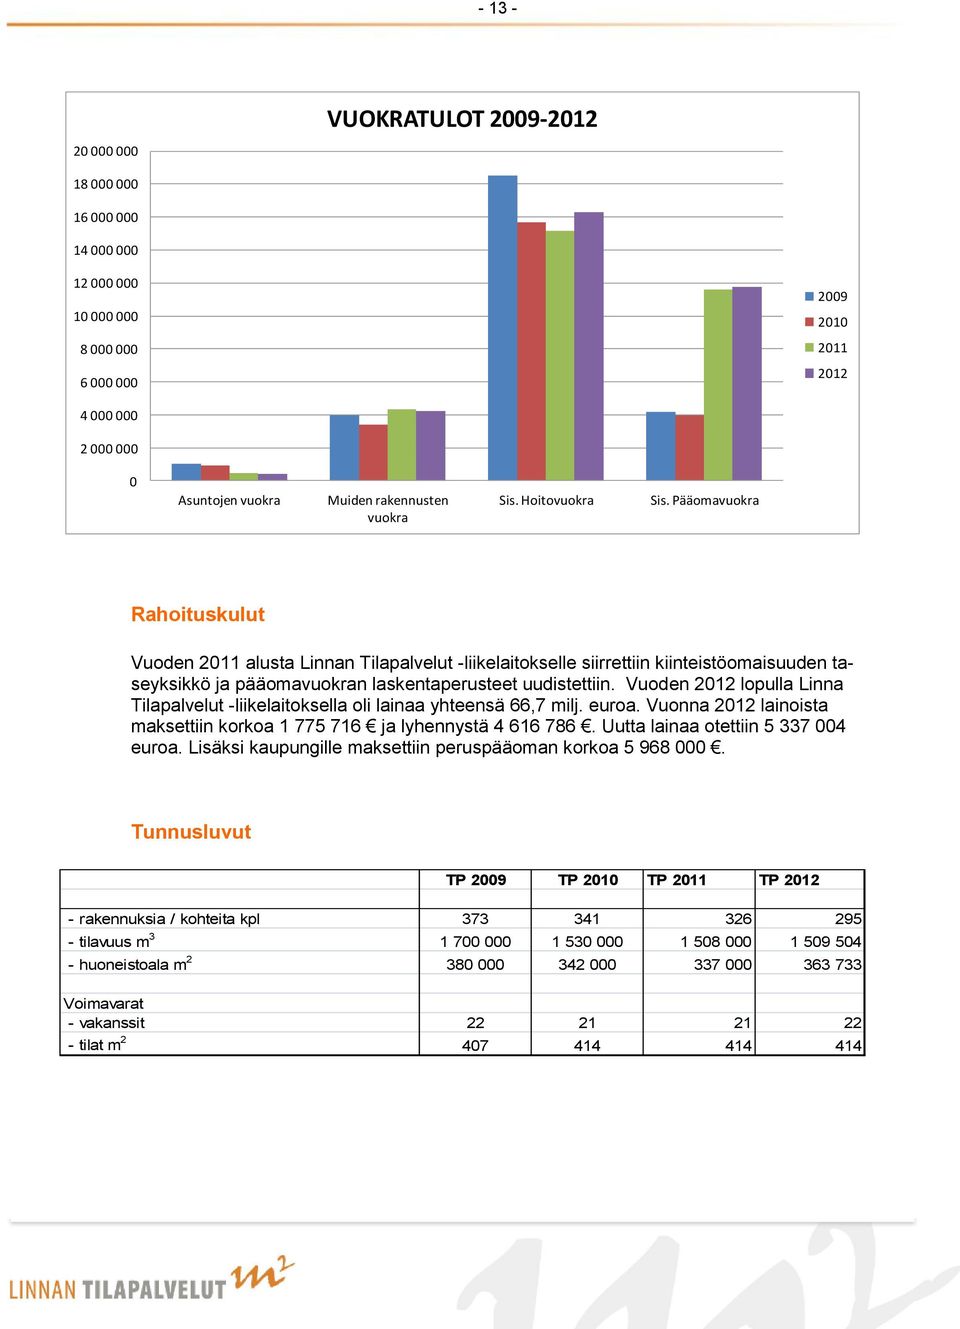 Vuoden 2012 lopulla Linna Tilapalvelut -liikelaitoksella oli lainaa yhteensä 66,7 milj. euroa. Vuonna 2012 lainoista maksettiin korkoa 1 775 716 ja lyhennystä 4 616 786.